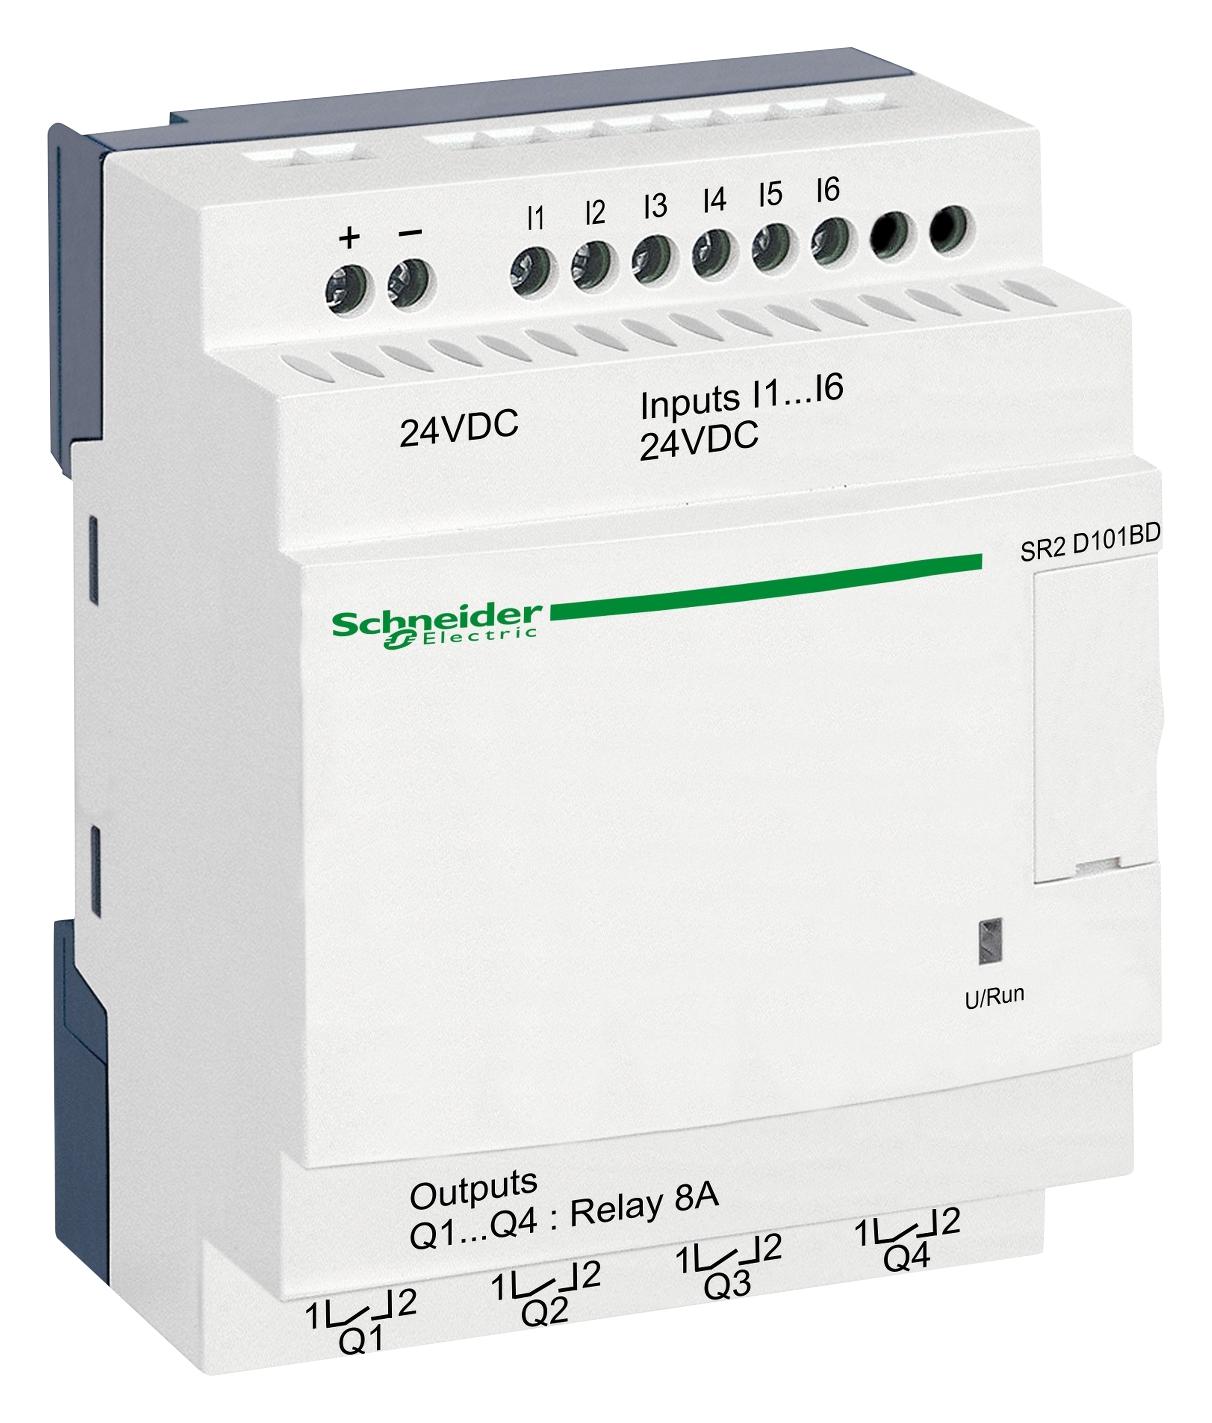 SR2D101BD COMPACT SMART RELAY, 10 I/O, 24V SCHNEIDER ELECTRIC